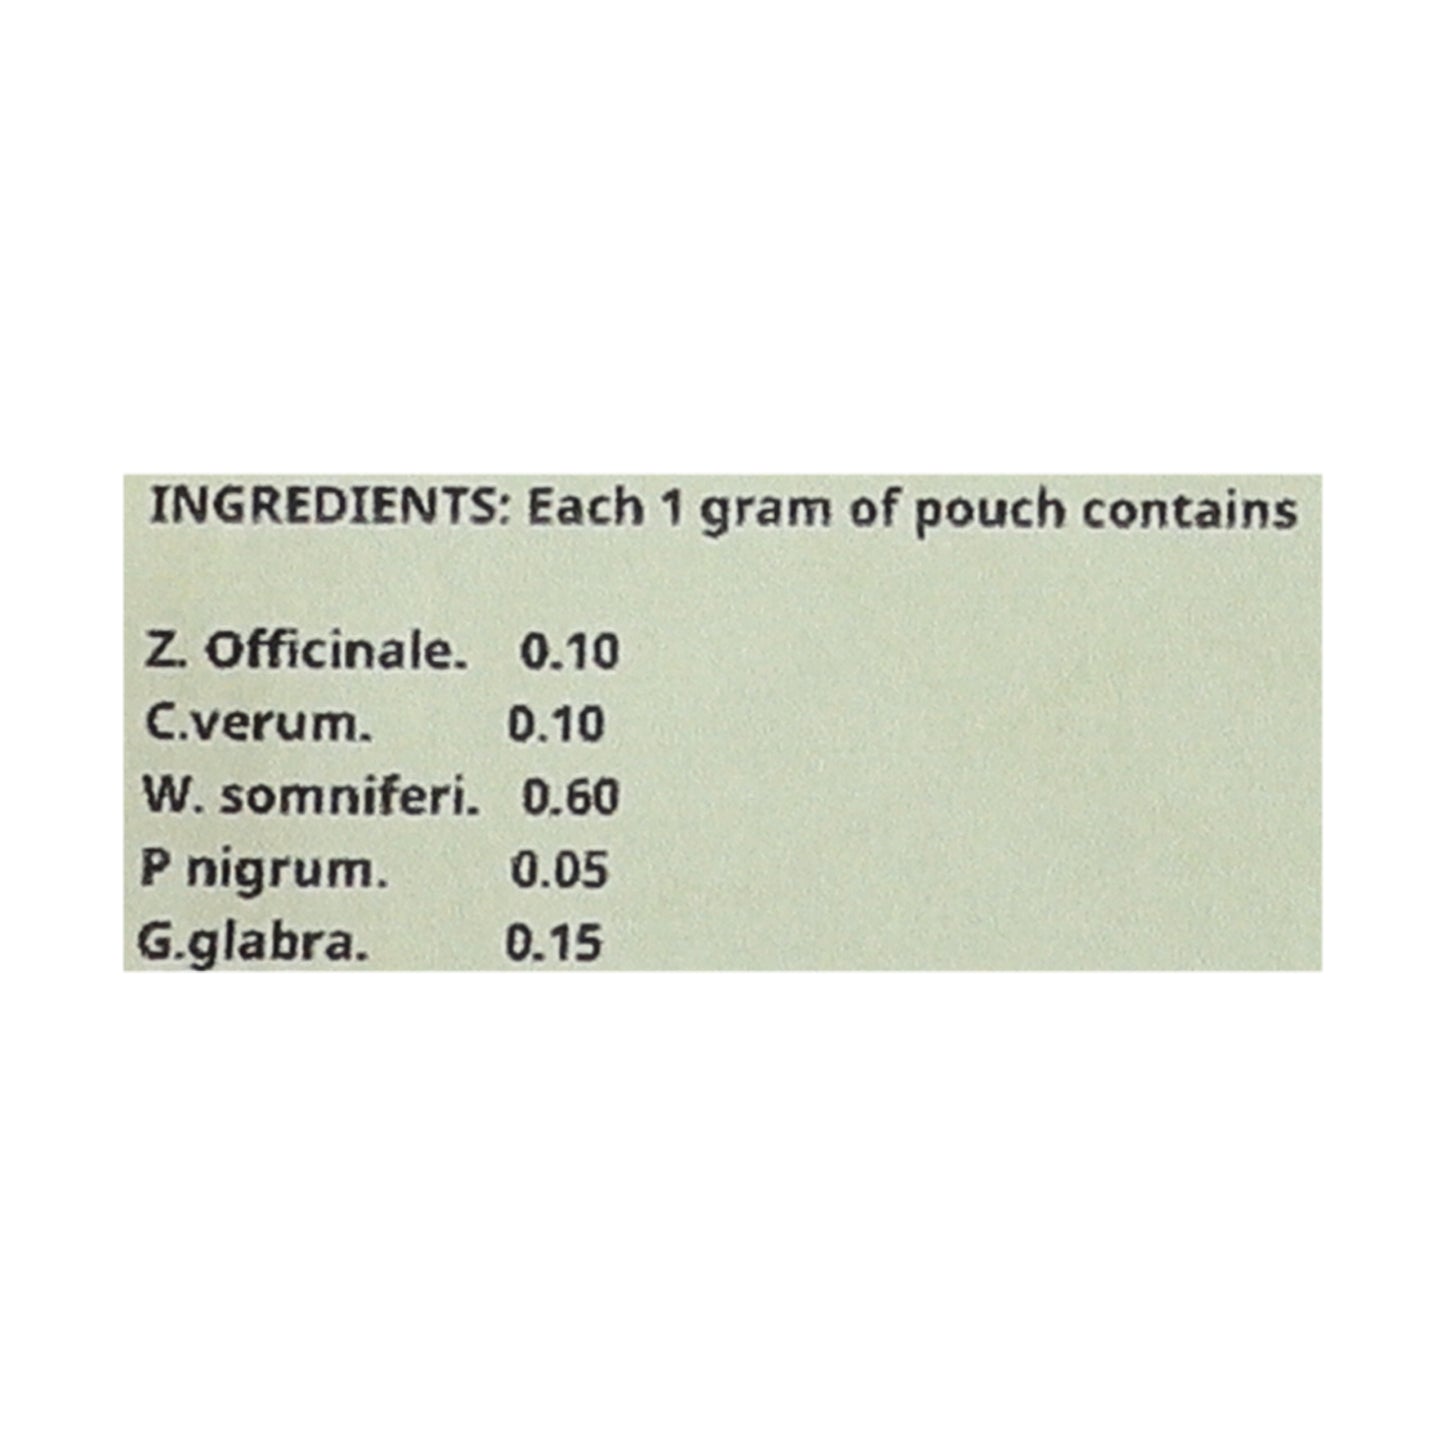 Ayurvansham Vishanti Herbal Powder   (45 G)